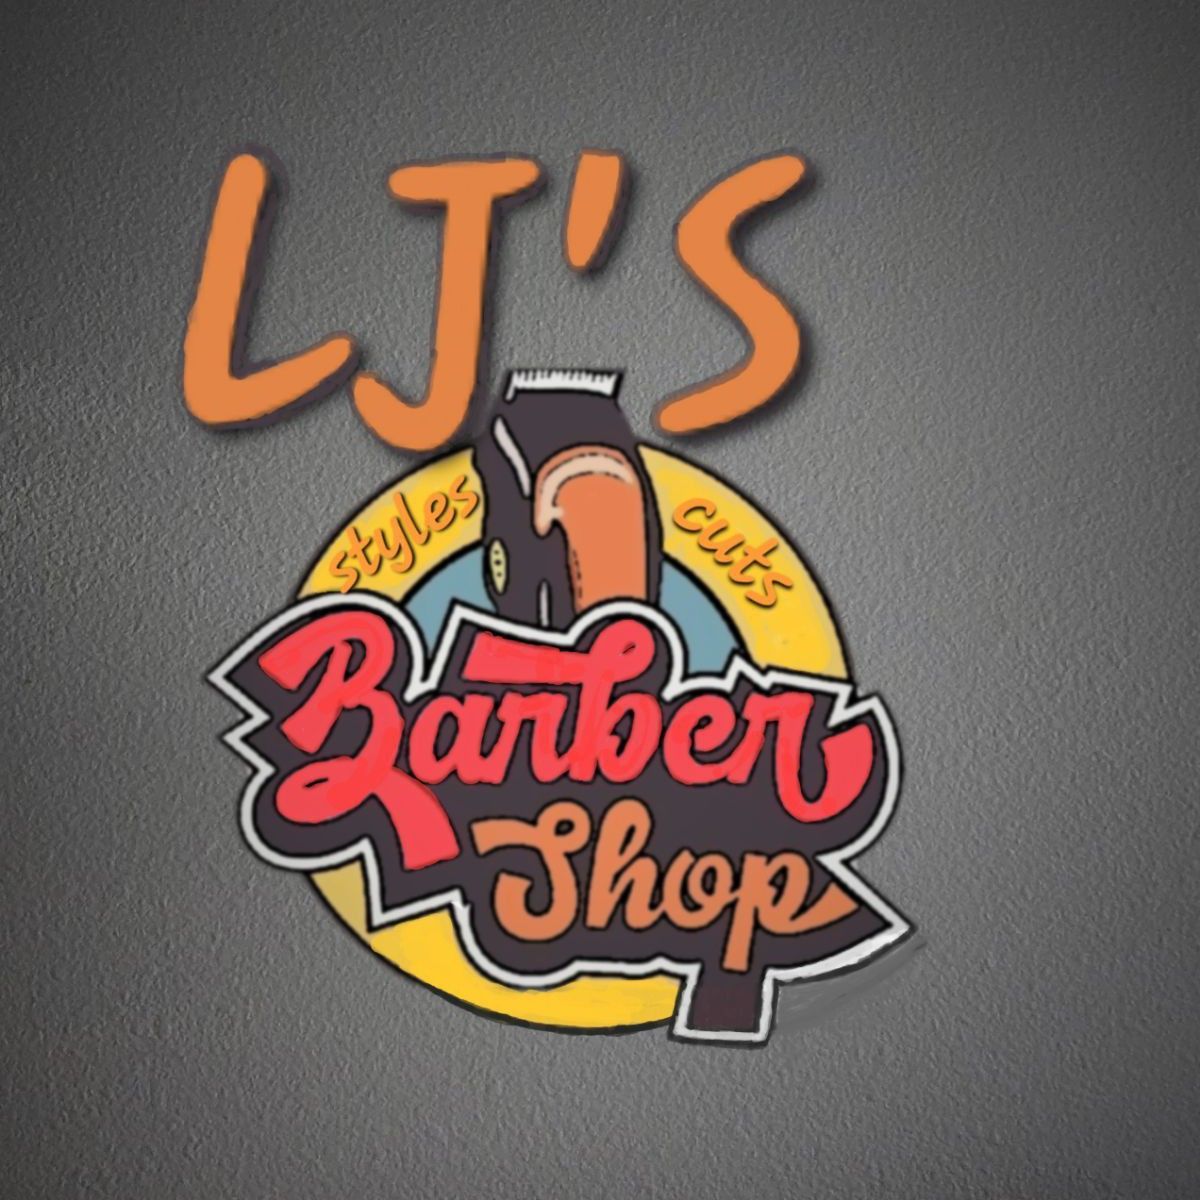 LJ'S Barbershop LLC, 3504 Industrial Ave, Suite 100, Fairbanks, 99701